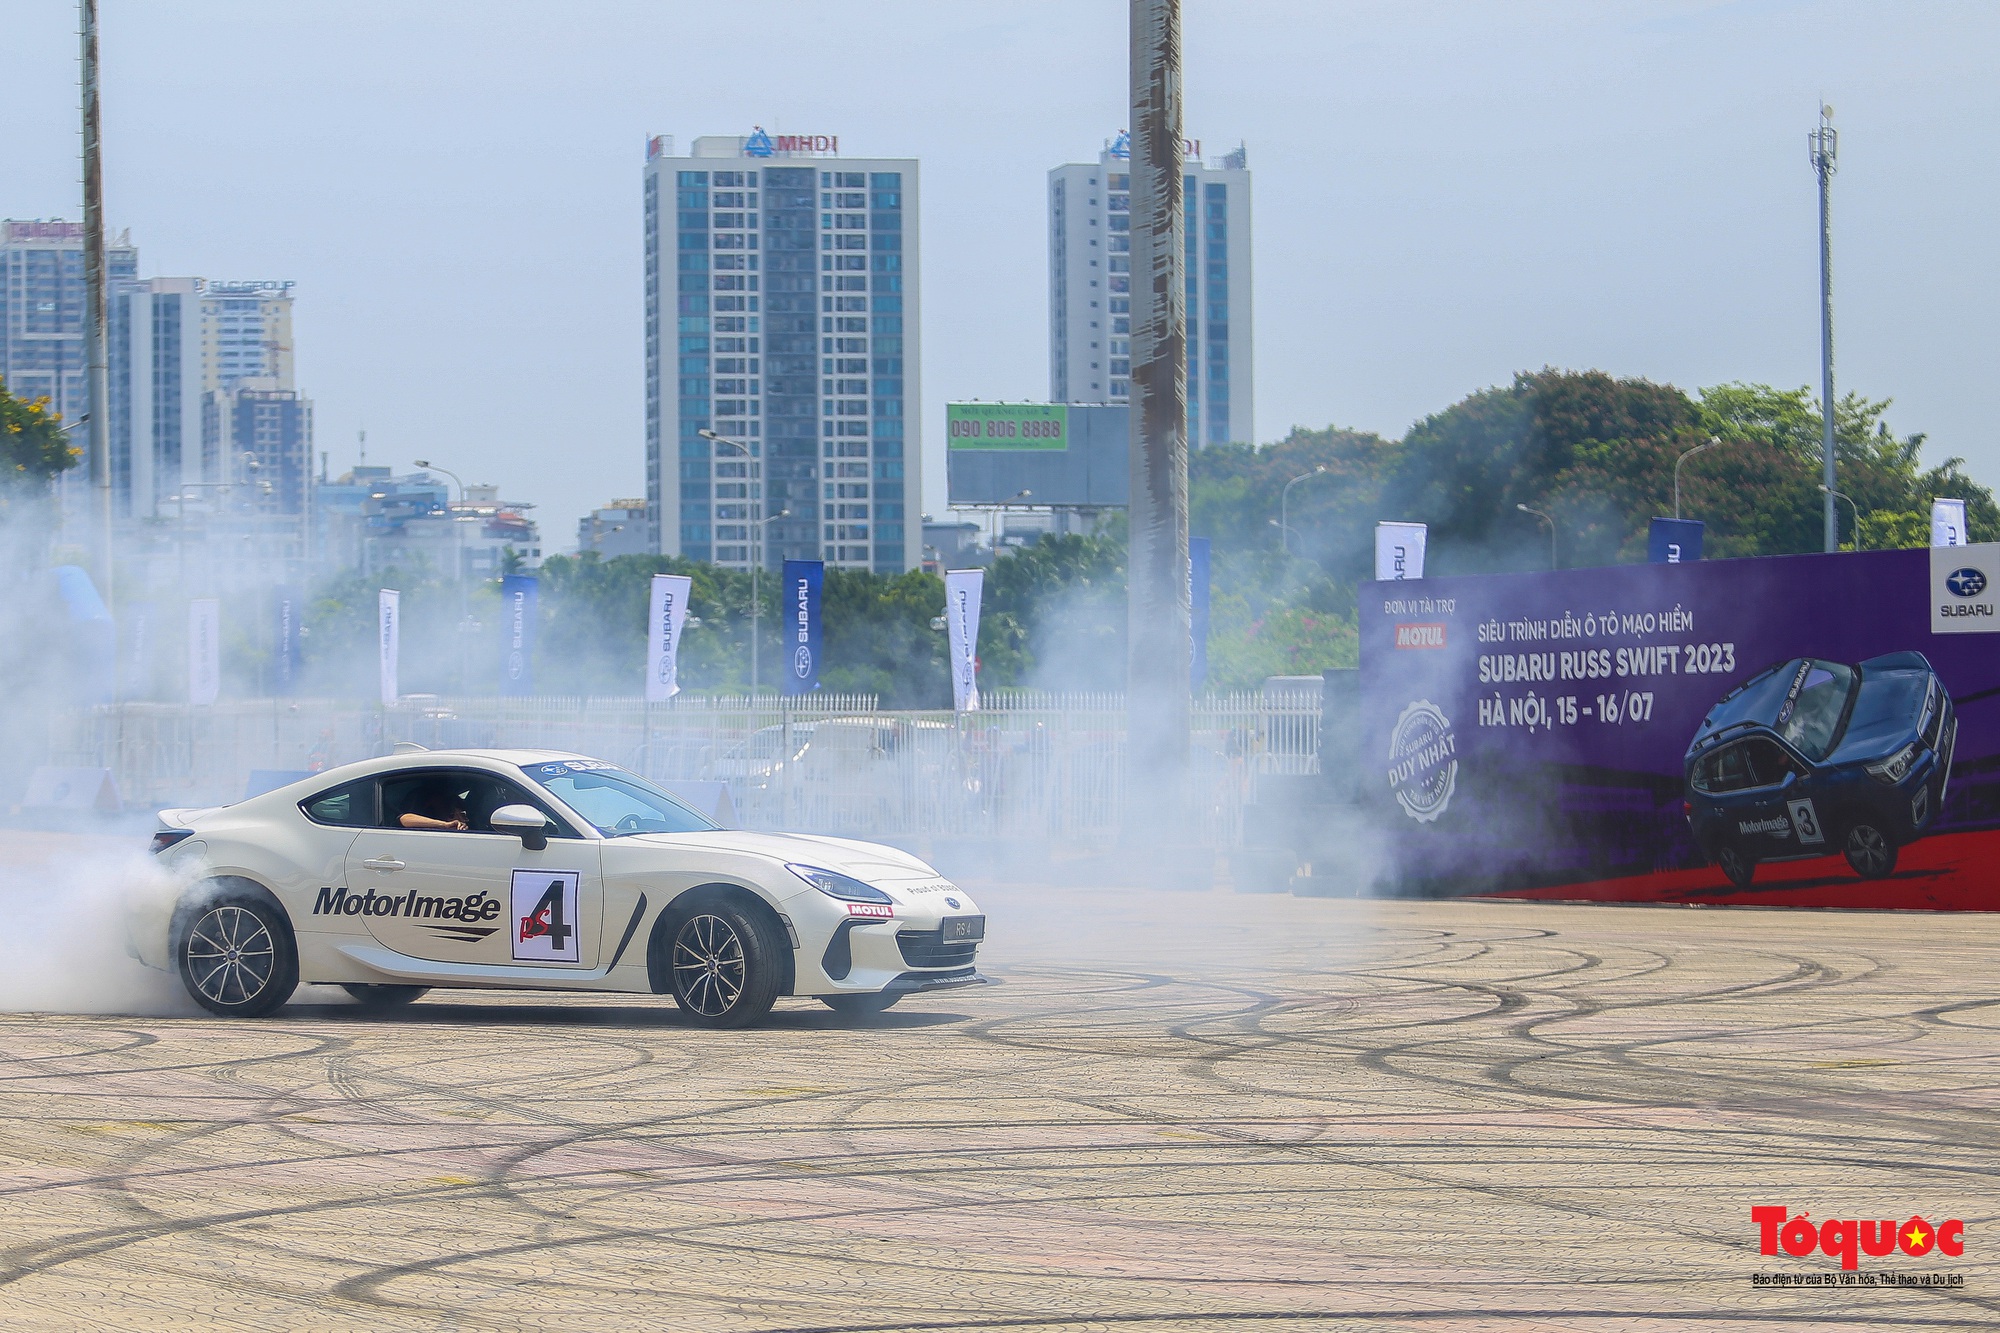 Người dân đội nắng xem kỷ lục gia thế giới trình diễn ô tô mạo hiểm tại Hà Nội - Ảnh 5.